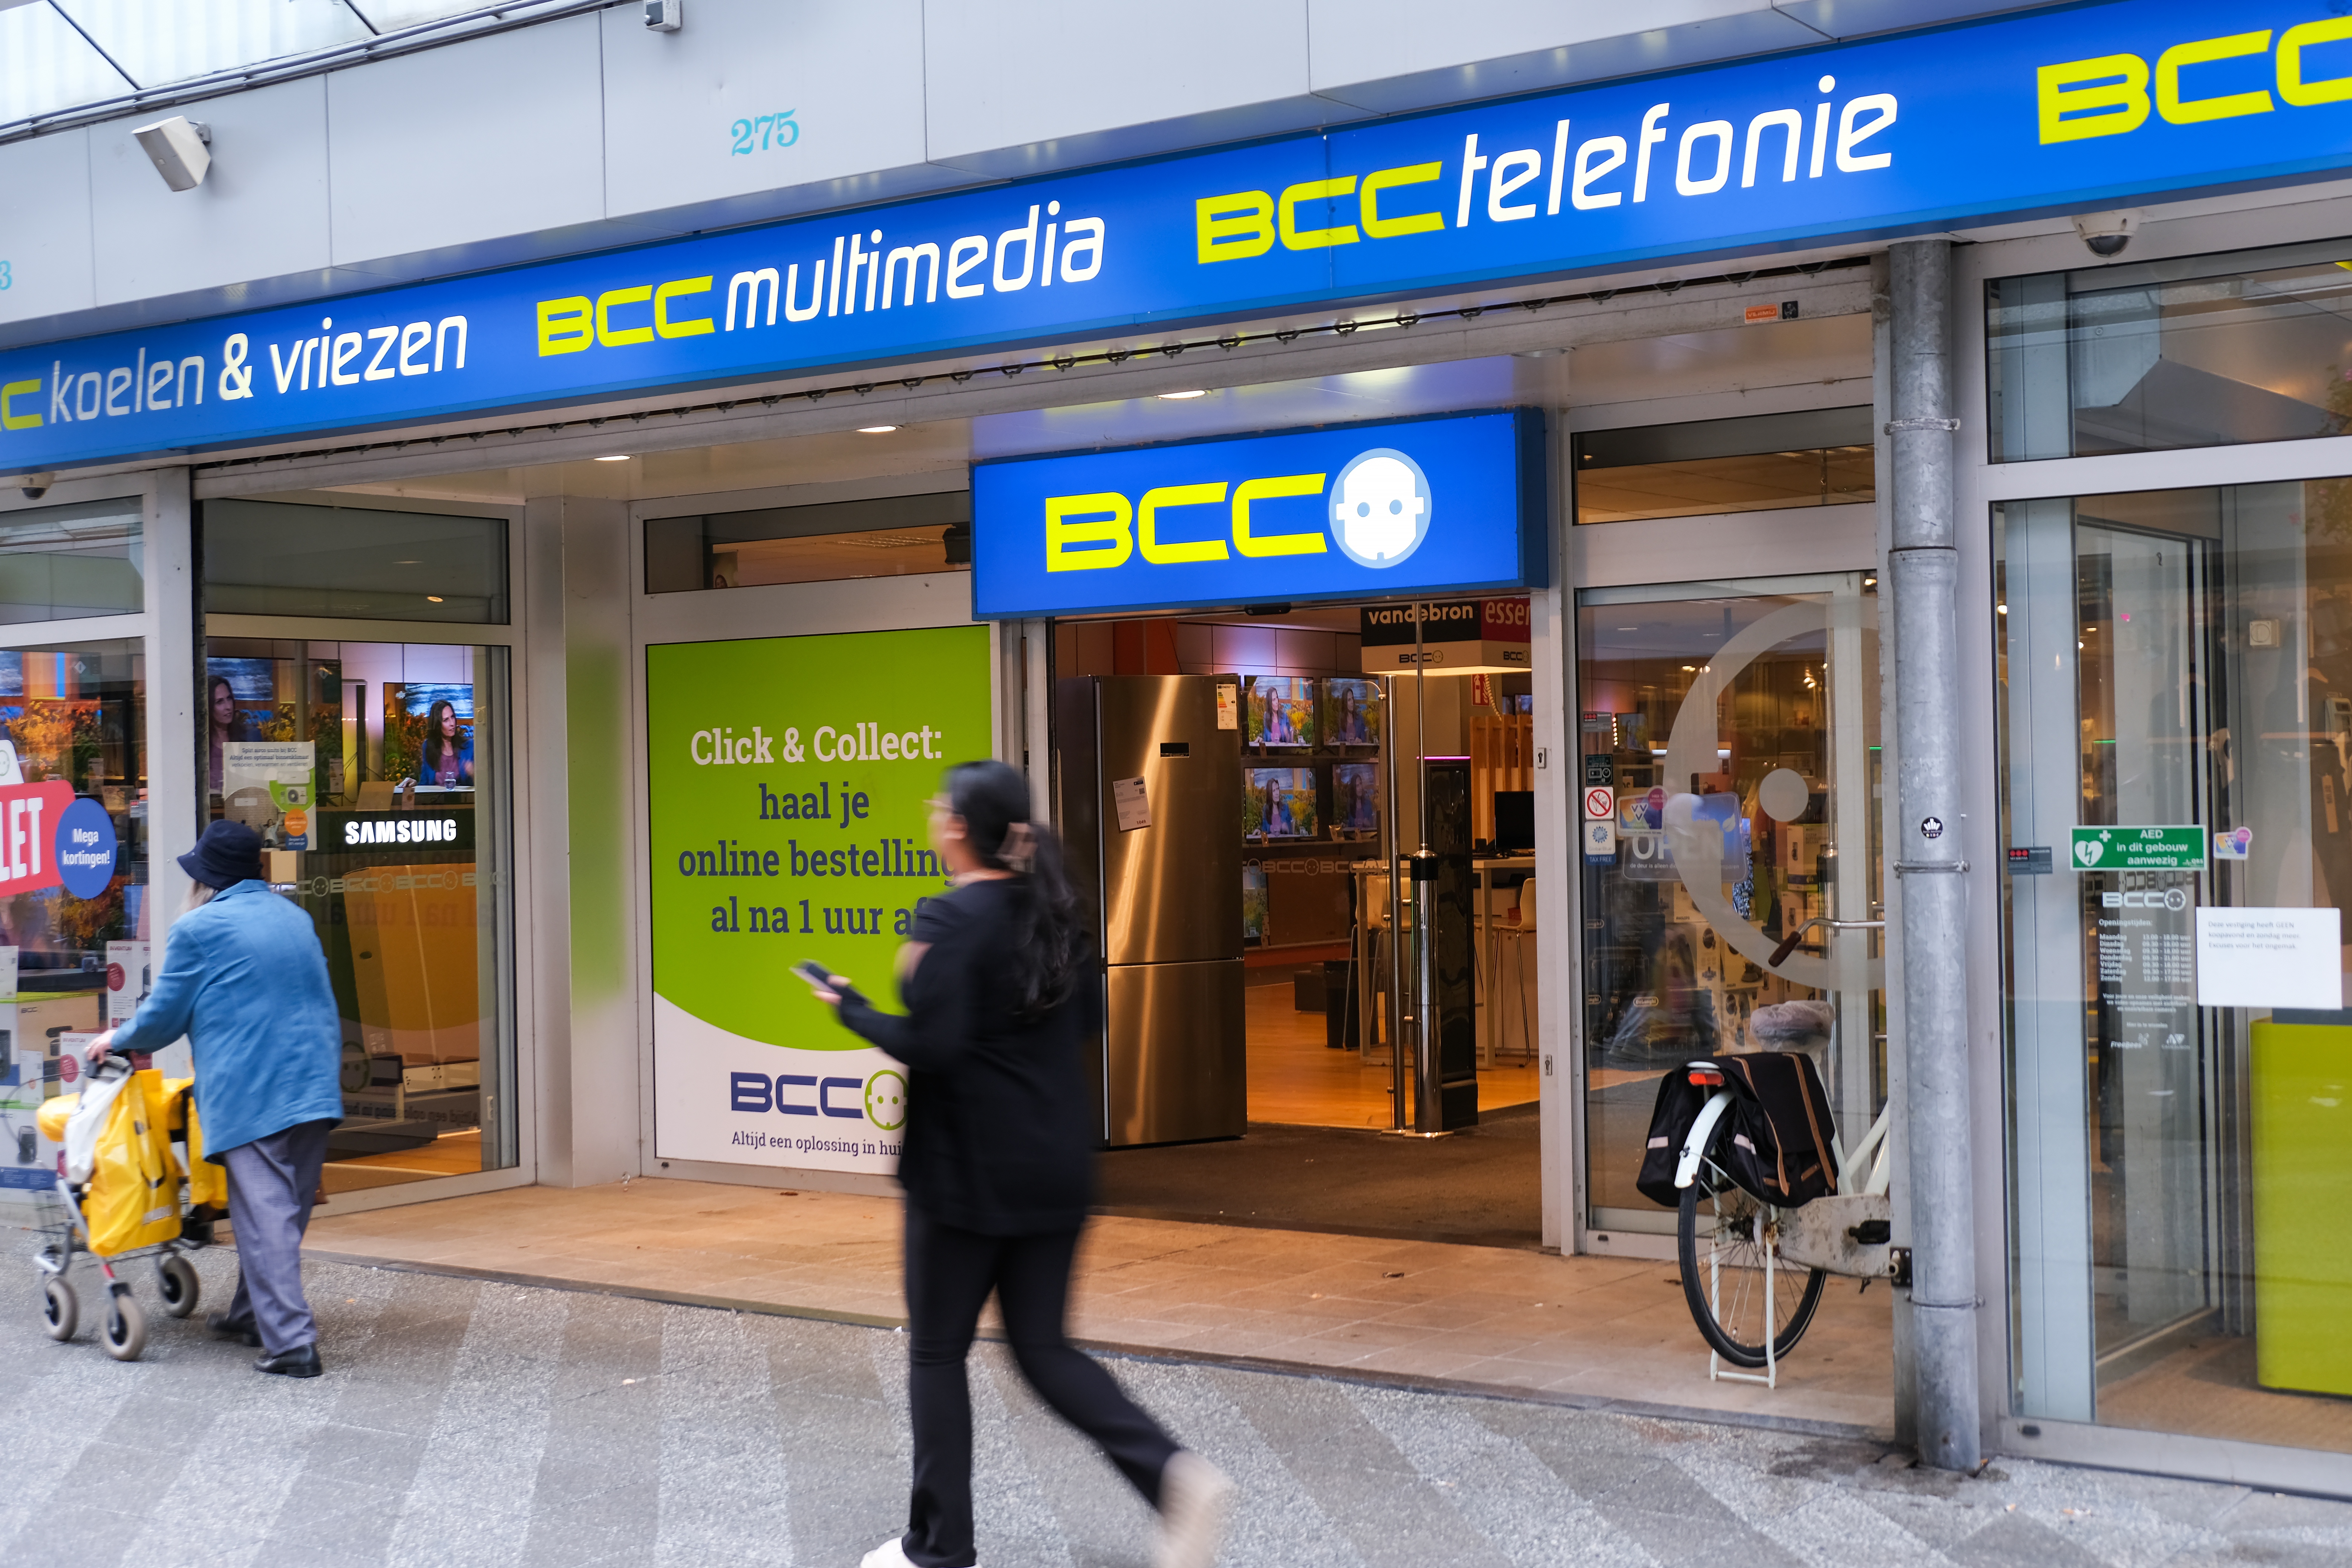 Trouwe klanten teleurgesteld om financiële situatie BCC: 'Ik ga altijd  expres niet naar de Mediamarkt